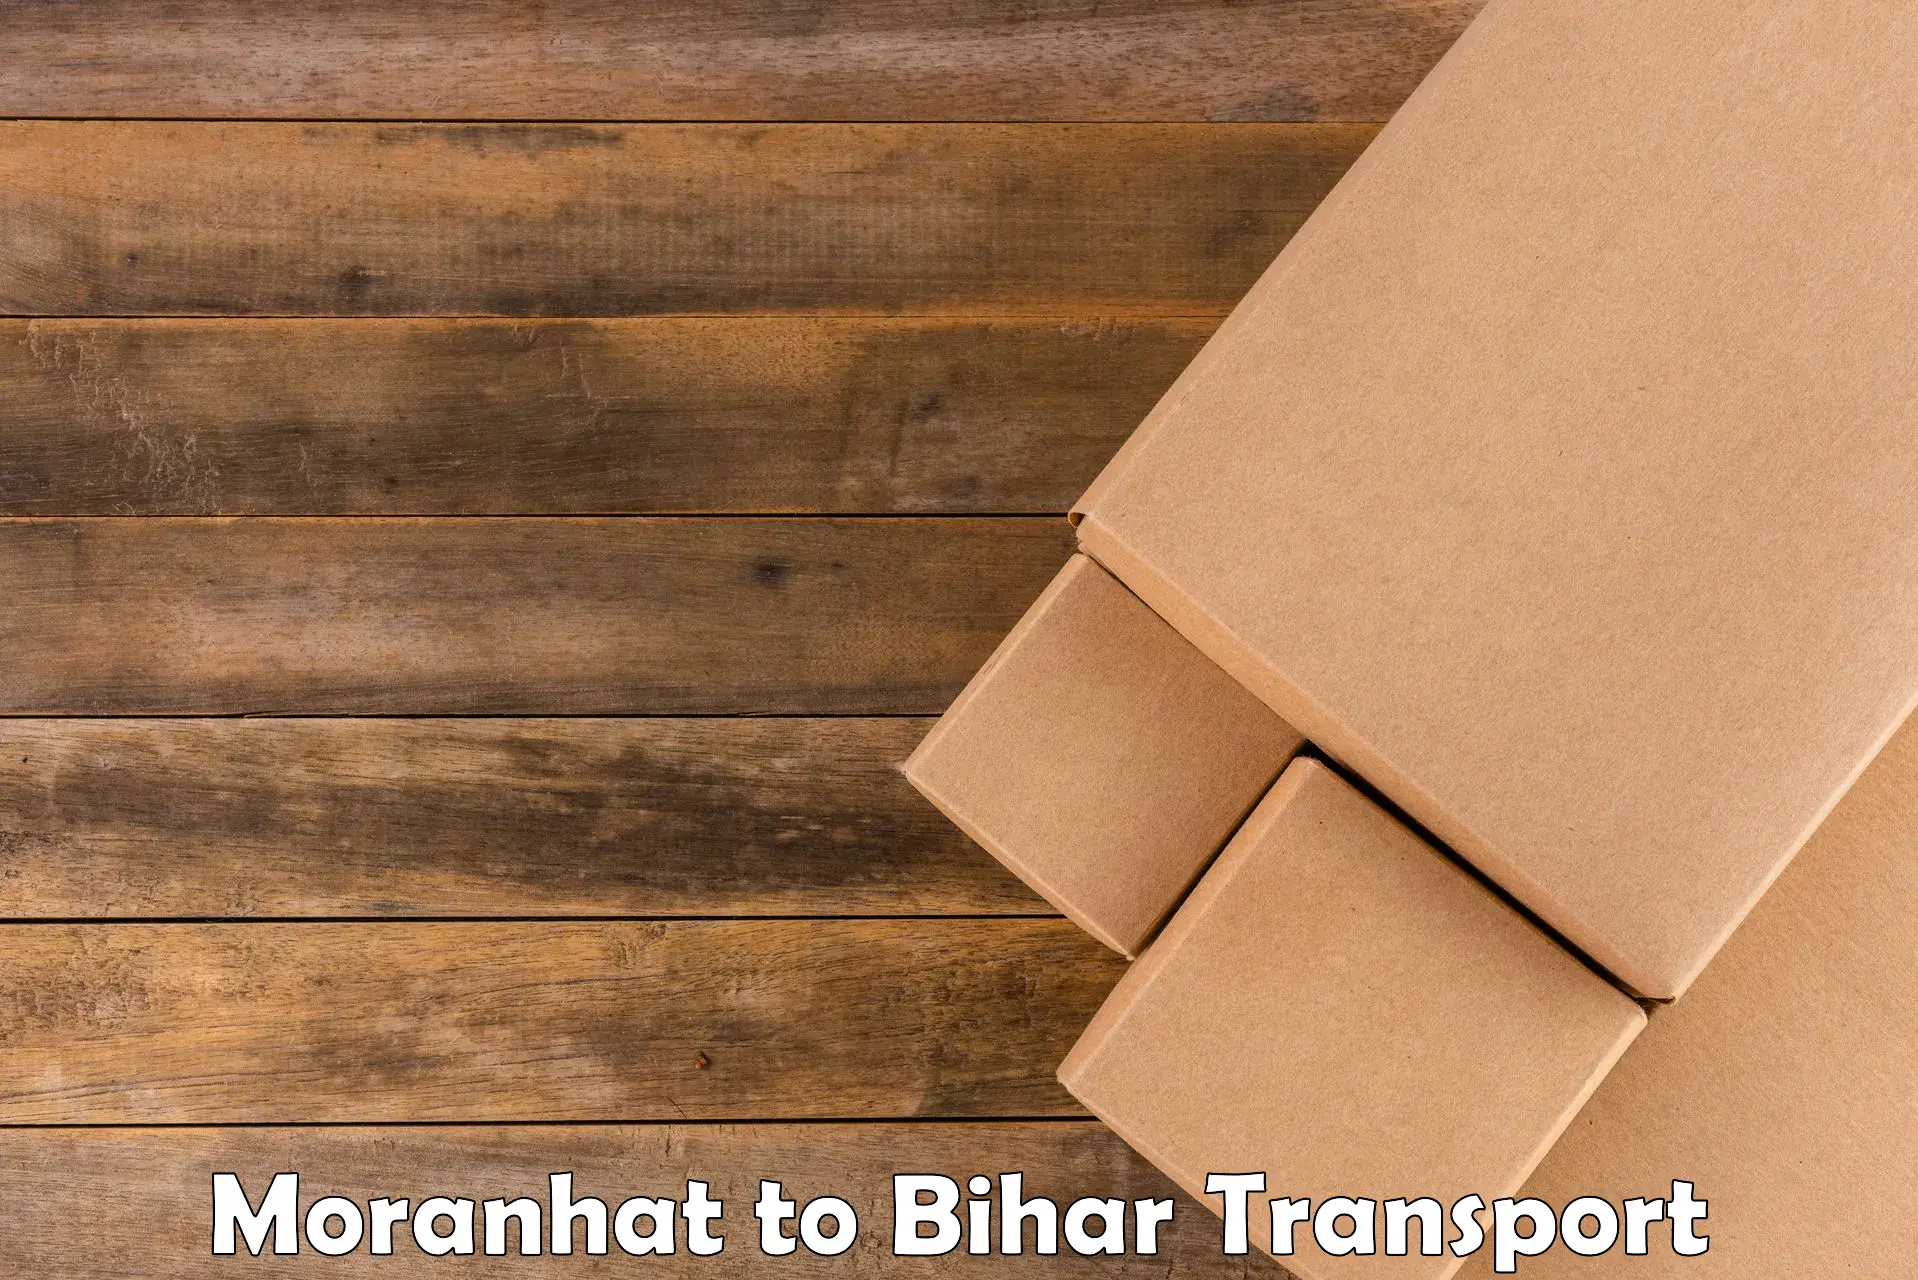 India truck logistics services Moranhat to Piro